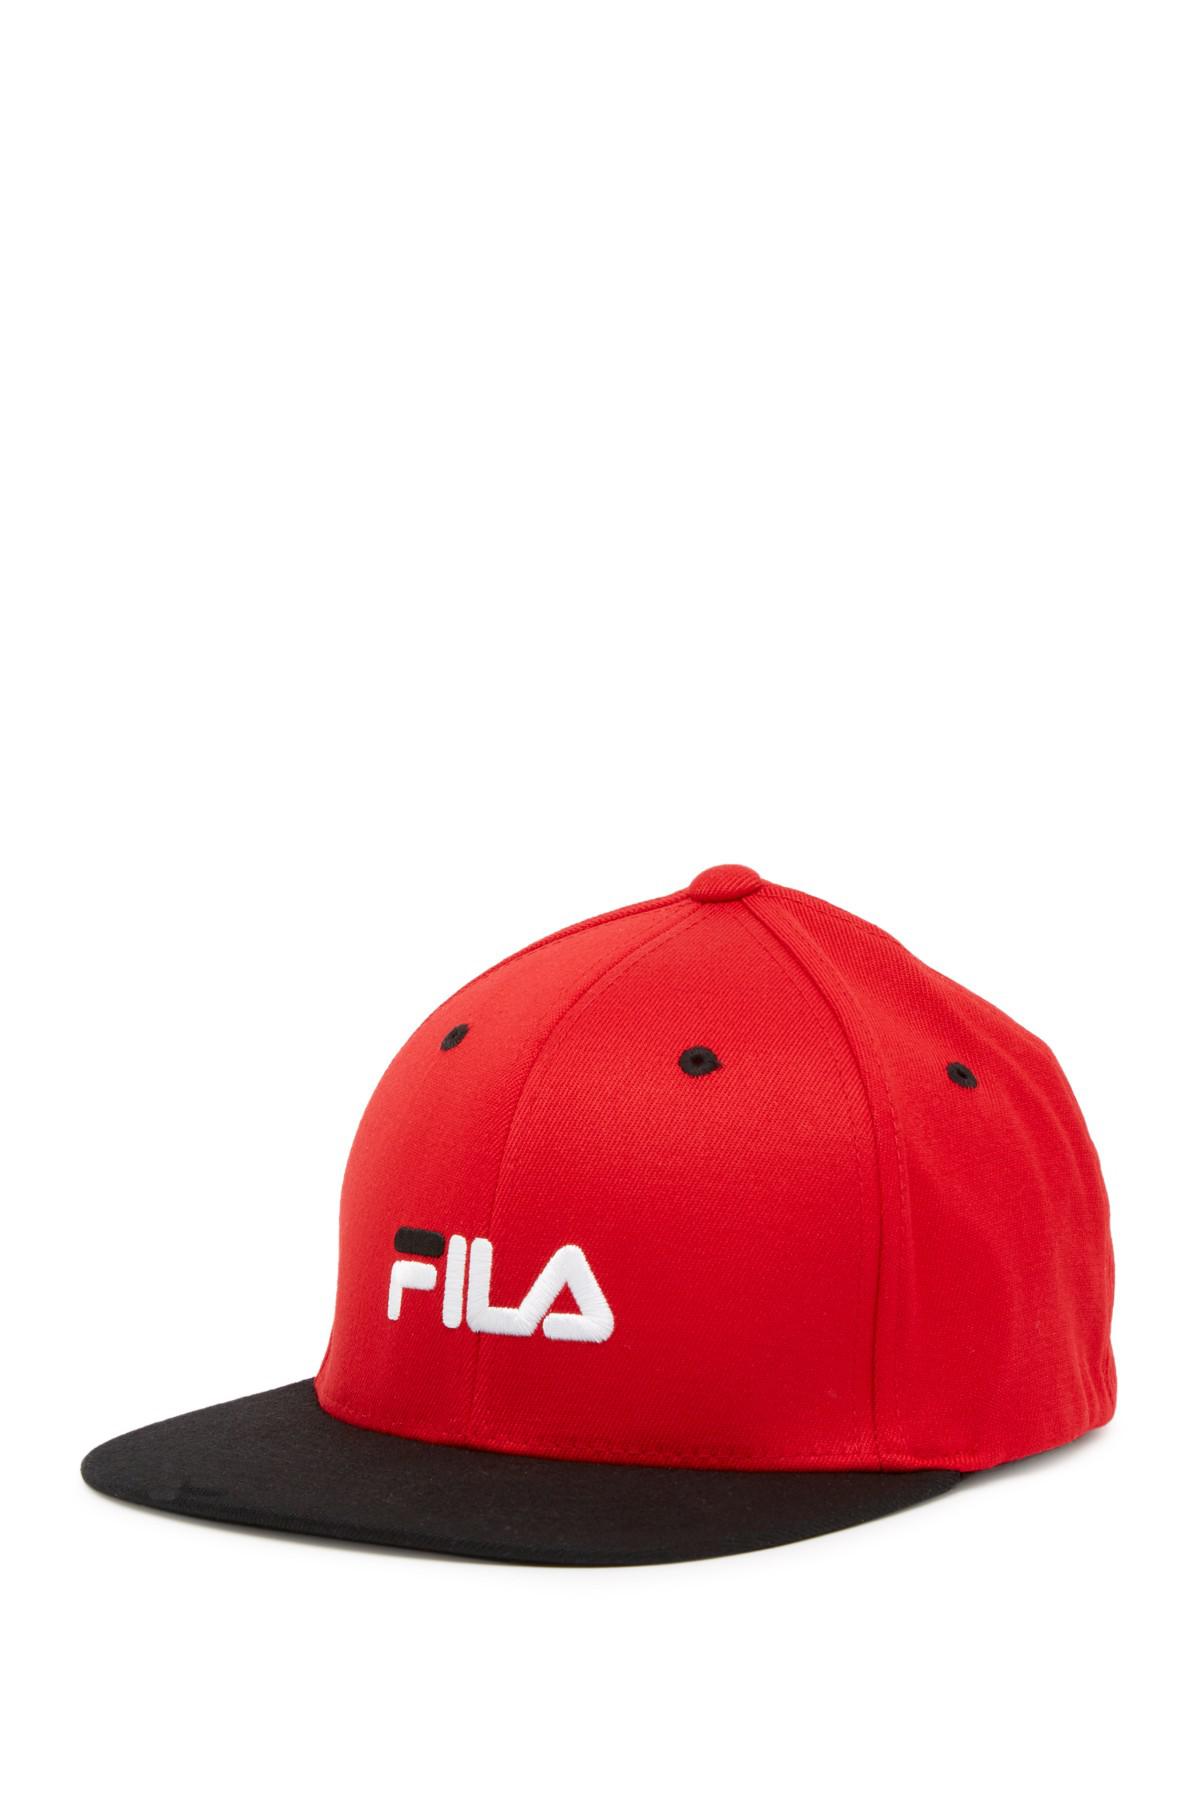 Fila Cotton Flat Brim Flexfit Cap in Red for Men - Lyst